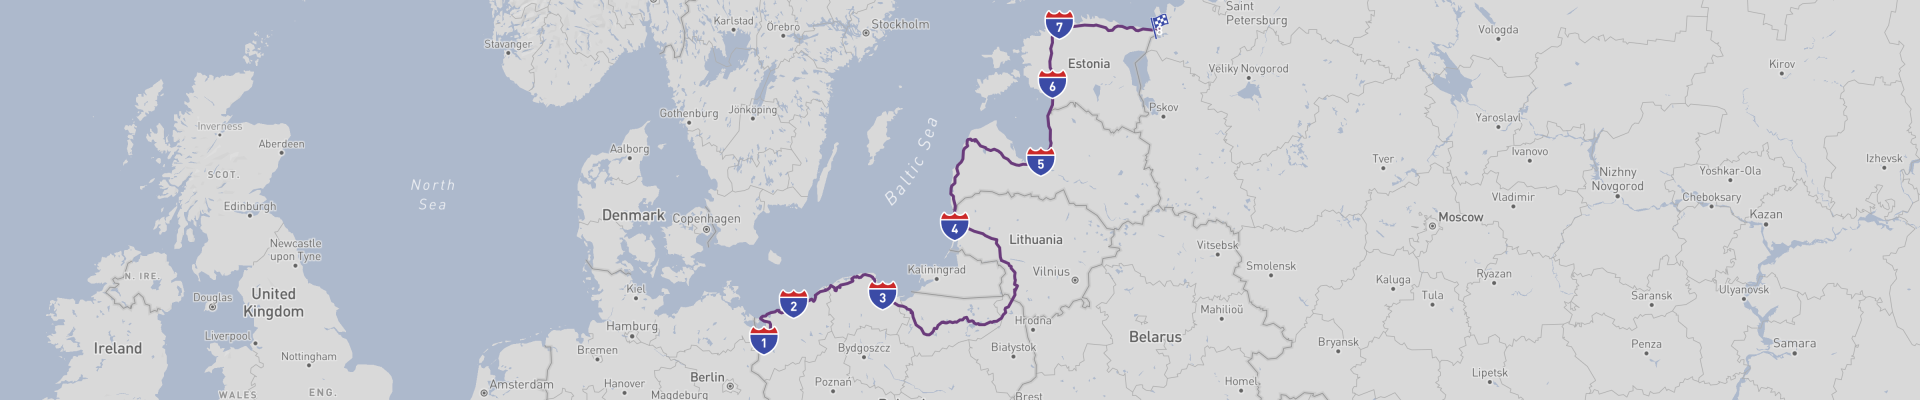 Road Trip langs de Baltische kust